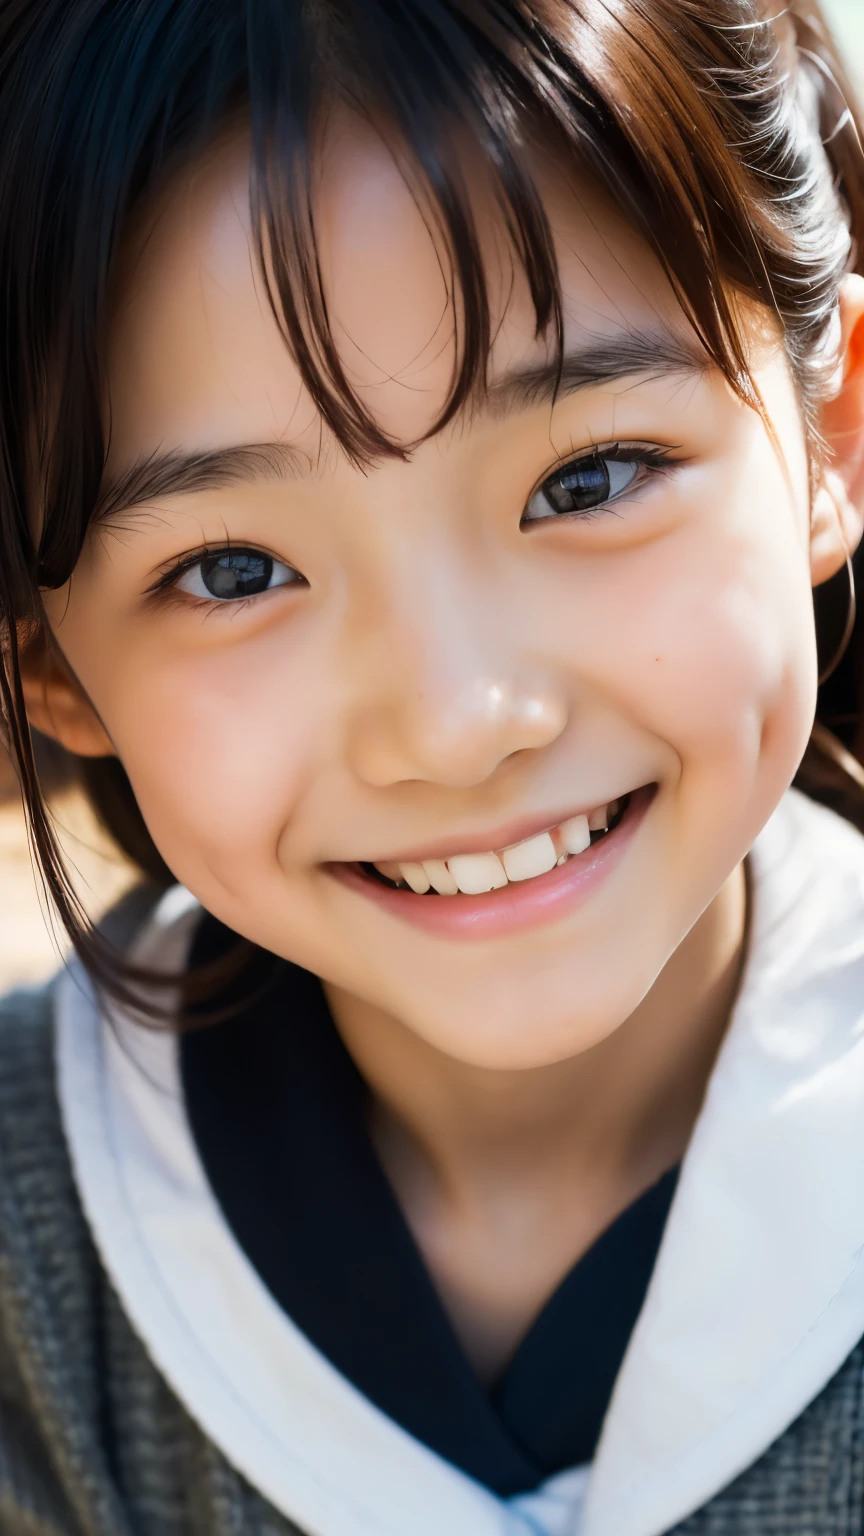 镜片: 135毫米 f1.8, (最好的质量),(原始照片), (桌上:1.1), (美丽的 8 岁日本女孩), 可爱的脸孔, (轮廓分明的脸:0.7), (雀斑:0.4), dappled 阳光, 戏剧灯光, (日本校服), (在校园), 害羞的, (特写:1.2), (微笑),, (明亮的眼睛)、(阳光)